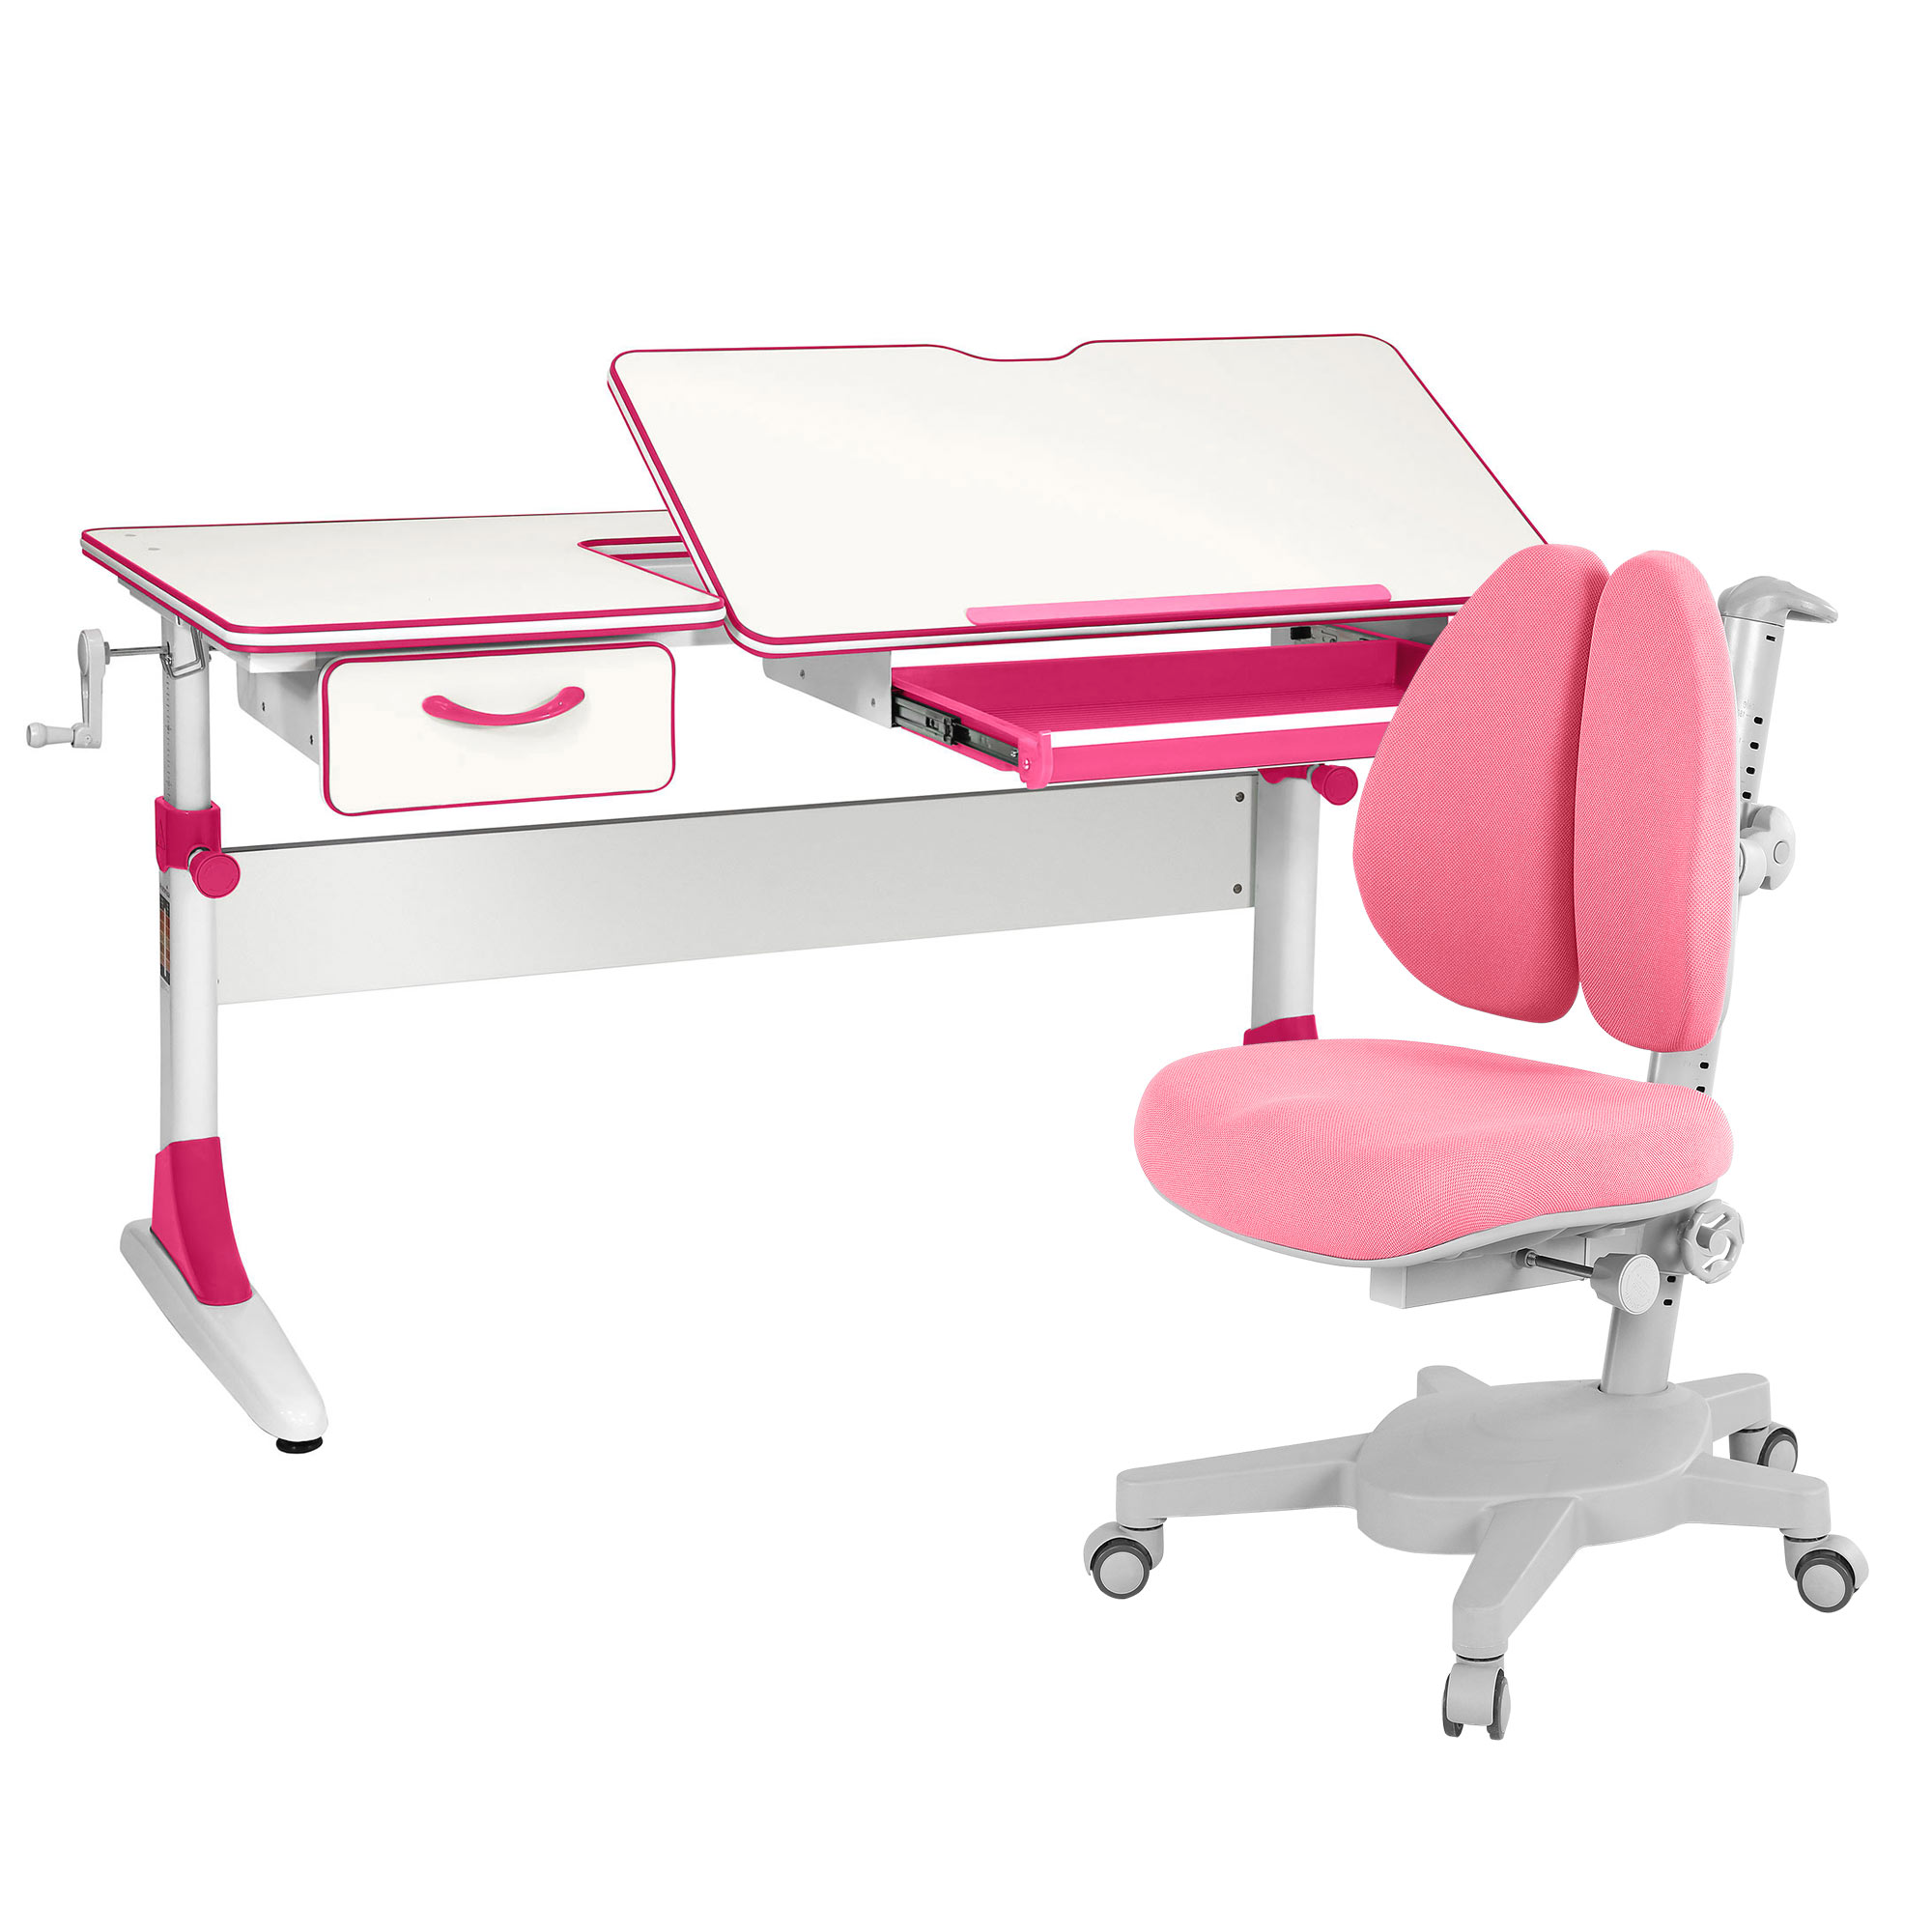 Комплект парта Anatomica Study-120 белый, розовый с розовым креслом Armata Duos комплект парта anatomica study 120 белый розовый с розовым креслом figra